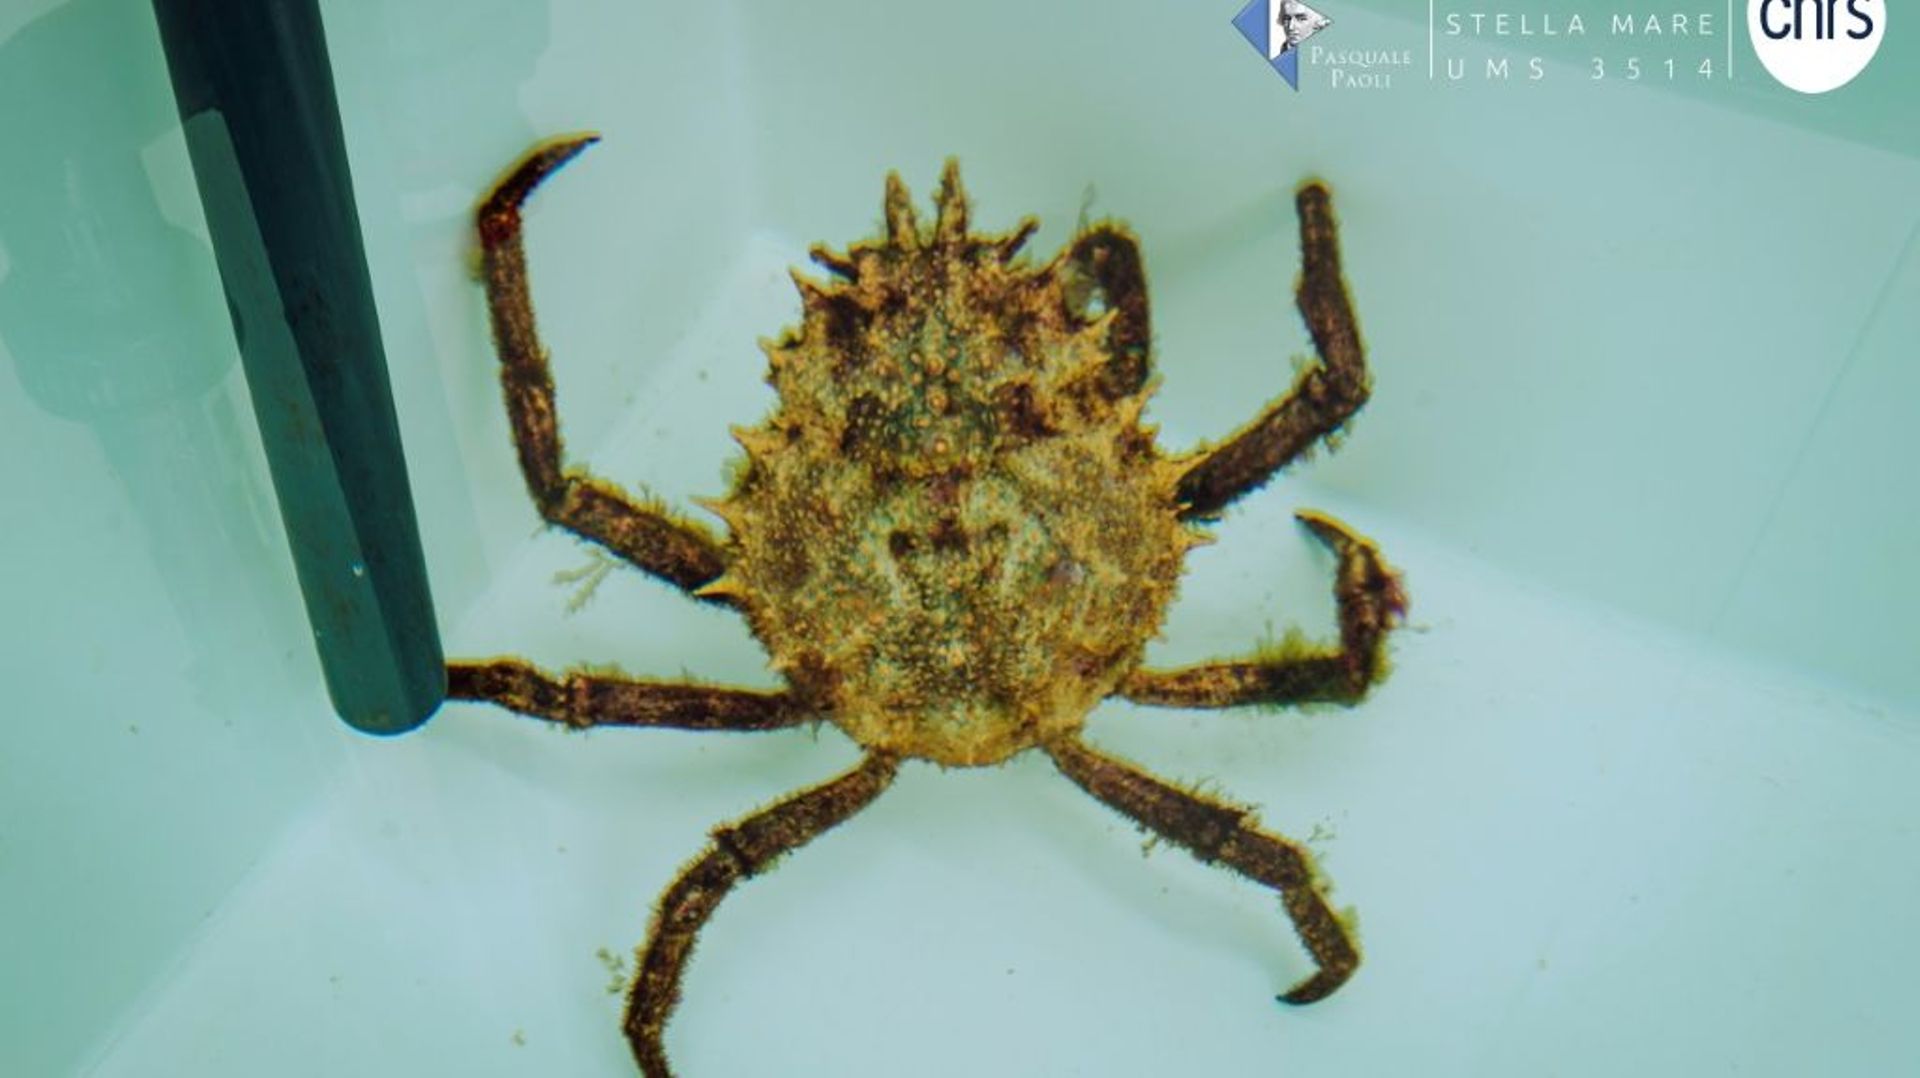 Photo diffusée par le laboratoire Stella Mare, le 18 octobre 2021, d'une araignée de Méditerranée juvénile